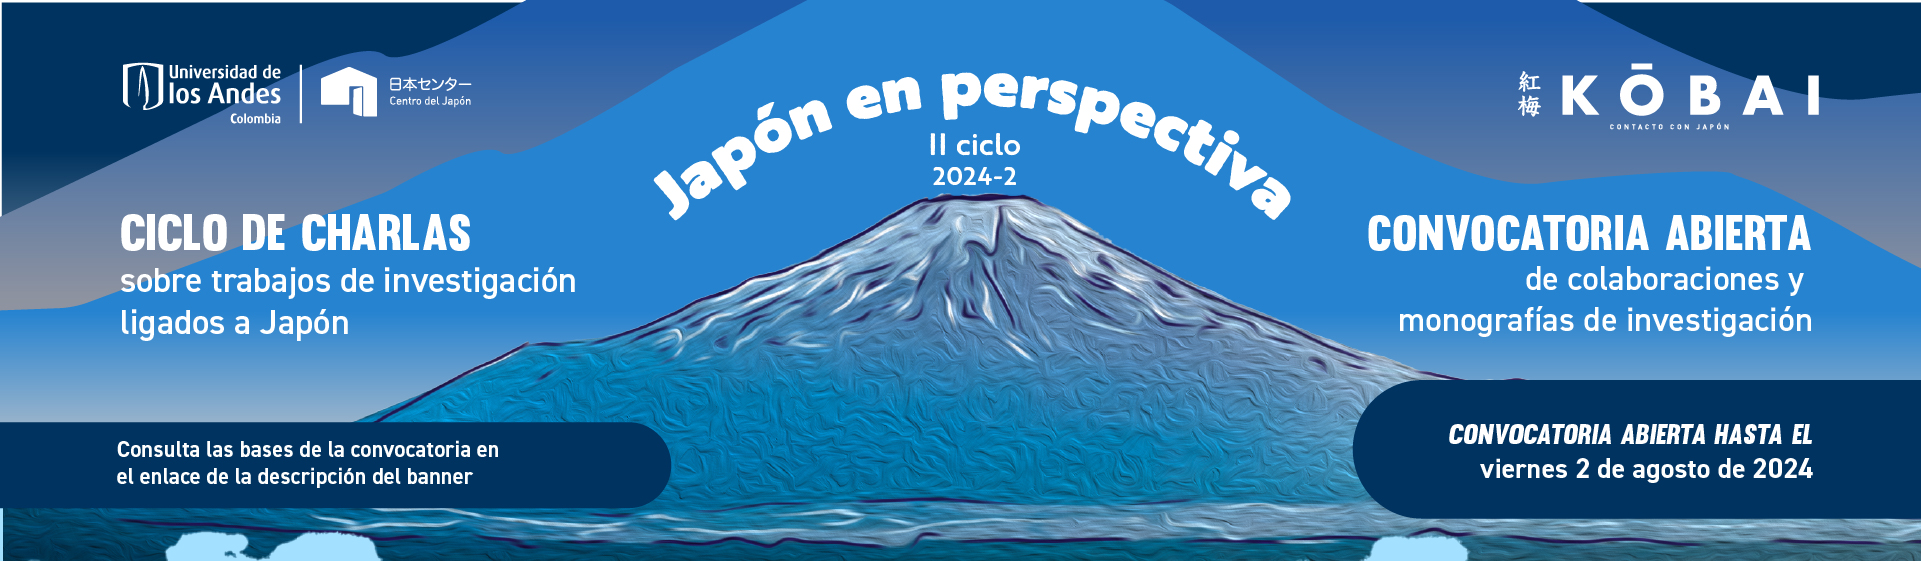 Convocatoria abierta: Japón en Perspectiva 2024-2